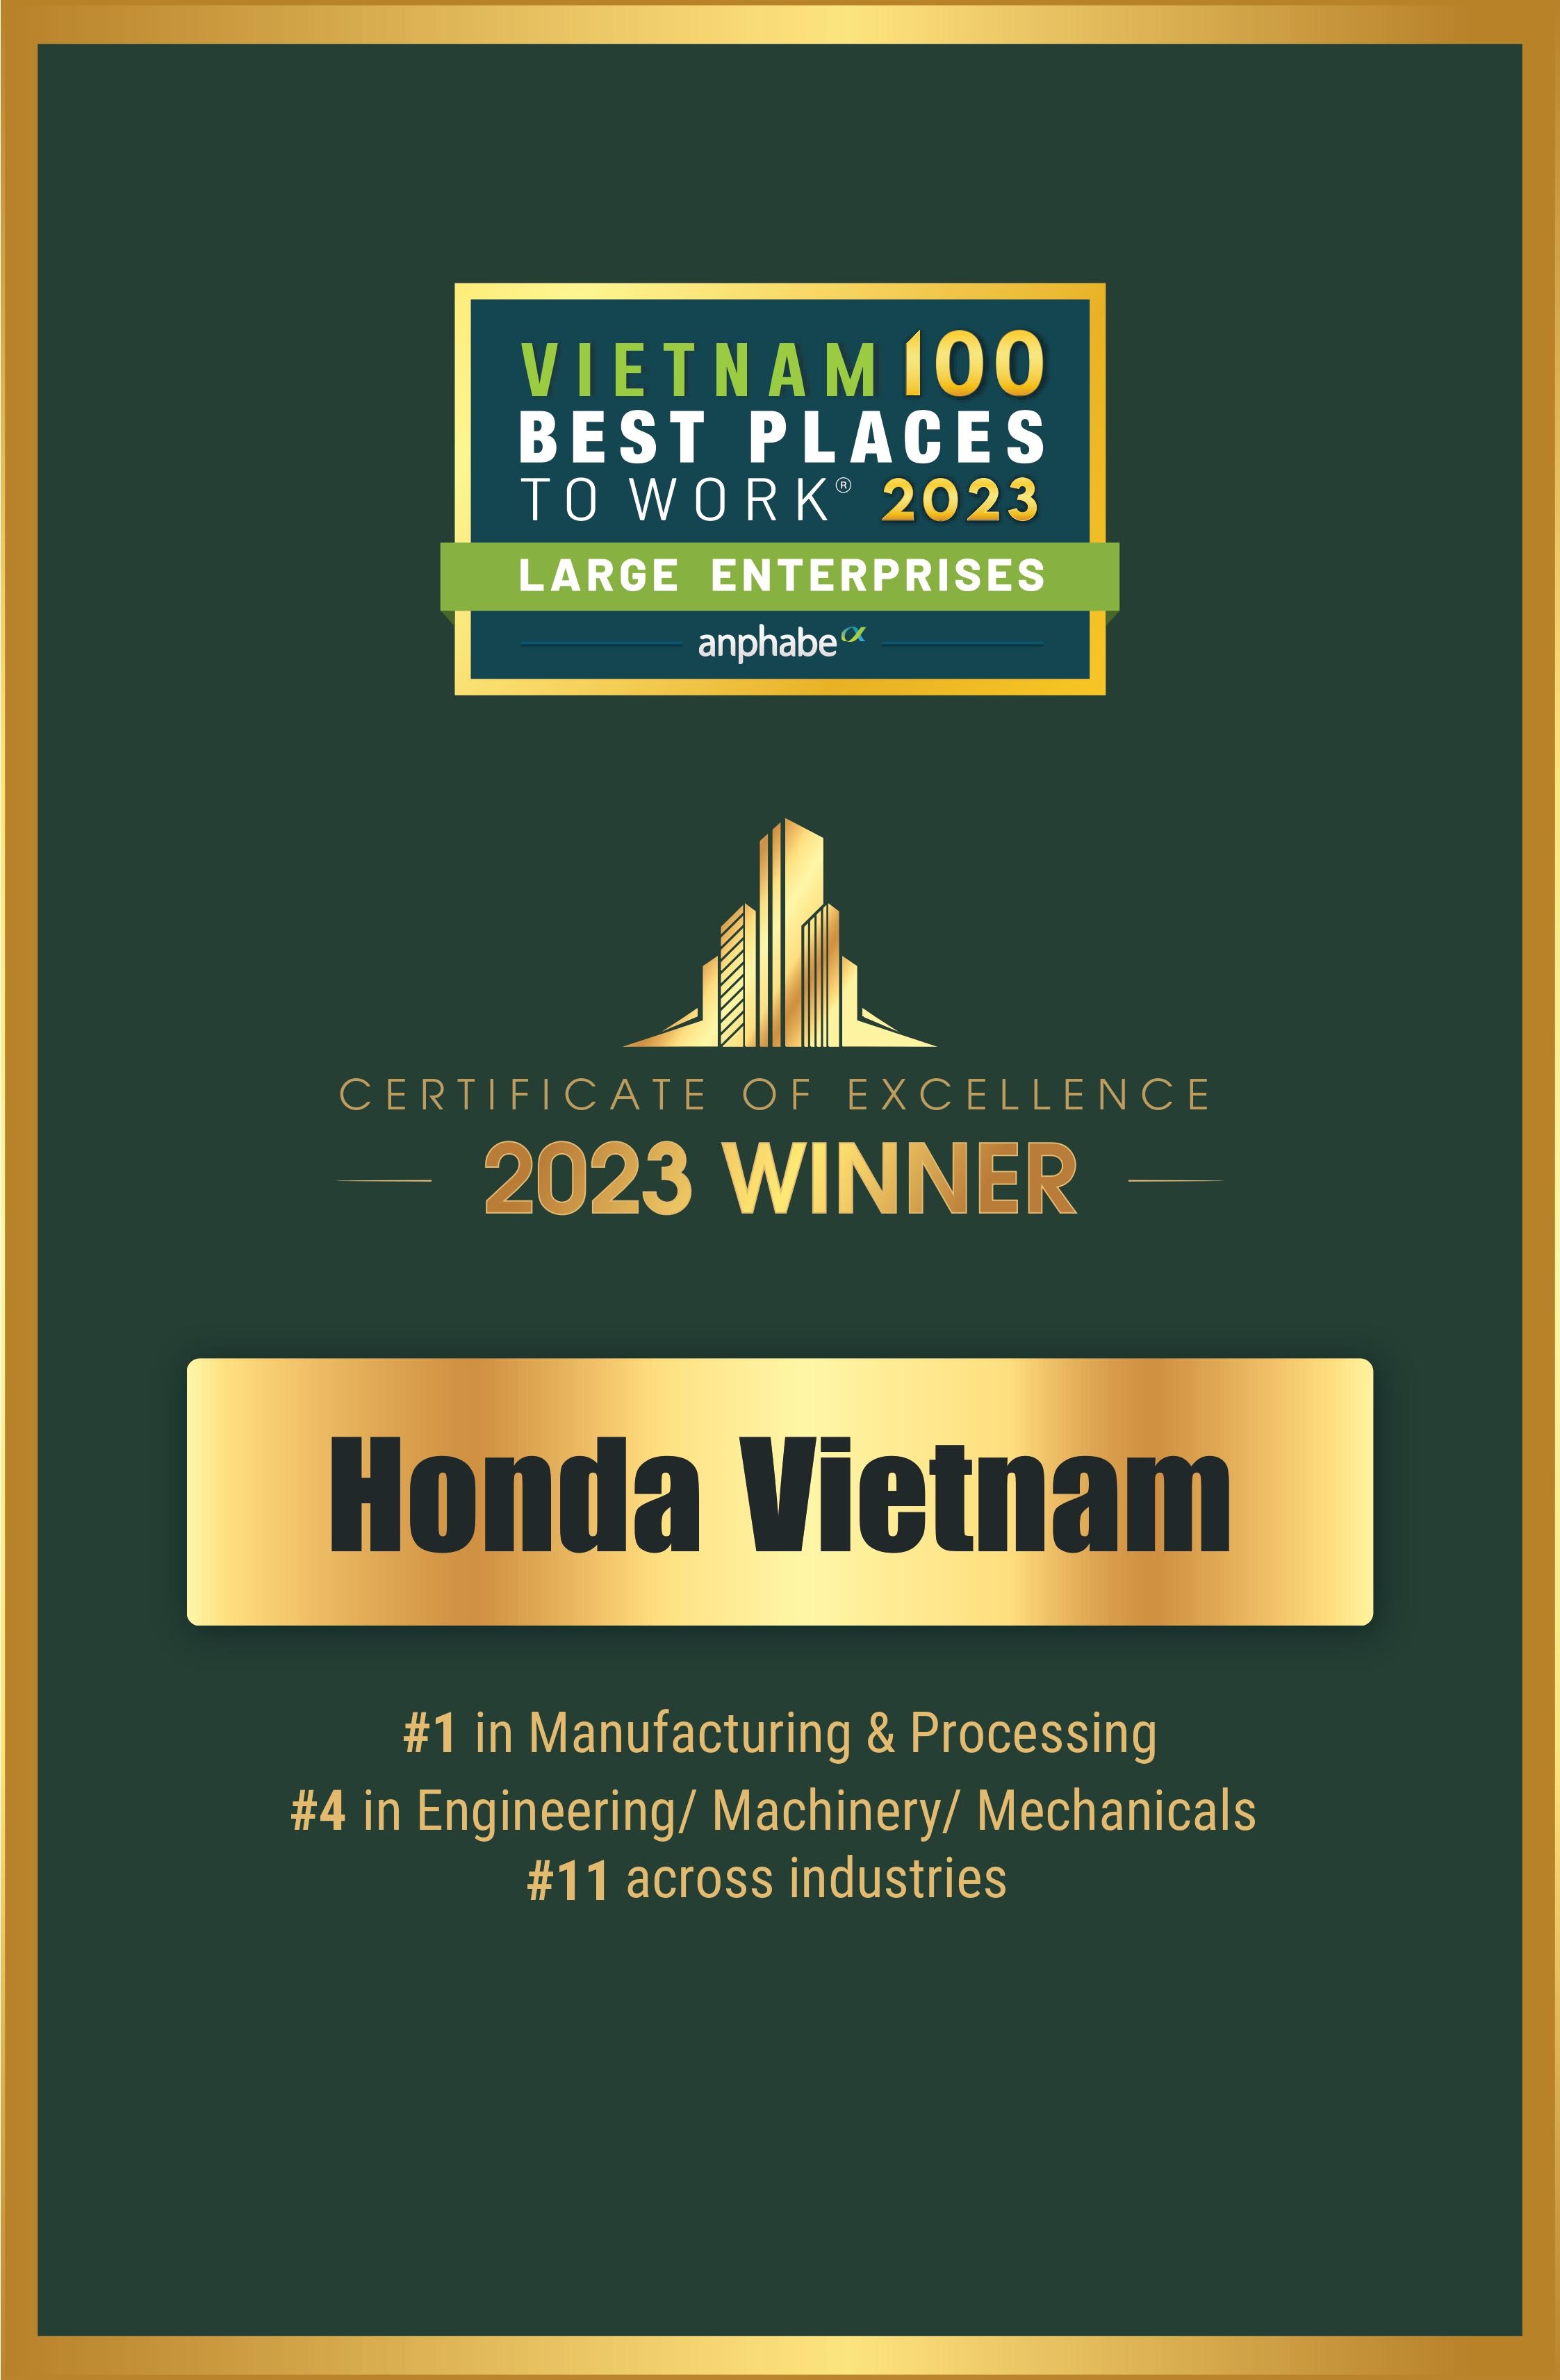 Chúc mừng Honda Việt Nam tiếp tục giữ vững vị trí Top 1 trong ngành Sản xuất/ Hóa chất năm 2023 